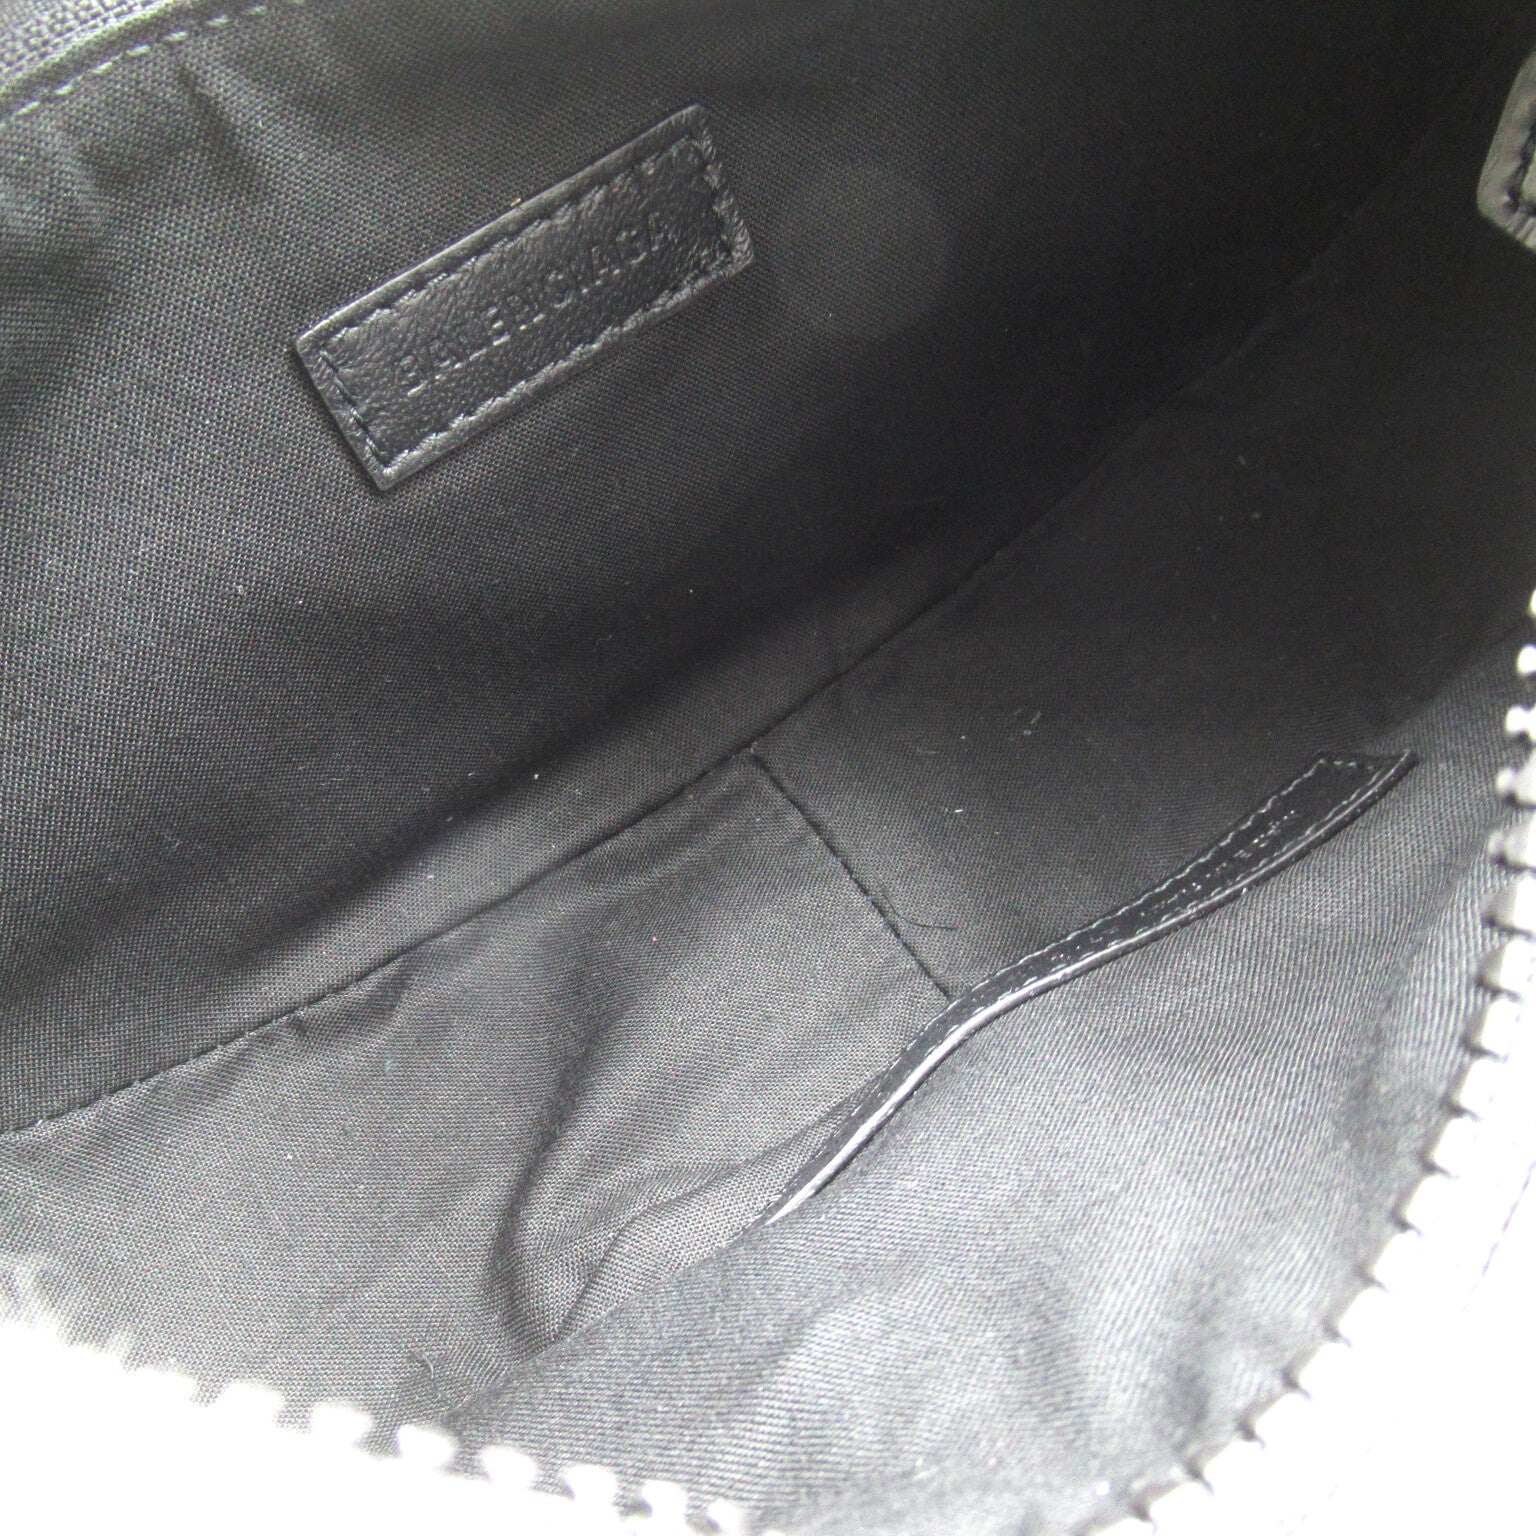 Balenciaga BALENCIAGA Le Cagoul XS Shoulder Bag Shoulder Bag   Black 6713092AAO01000